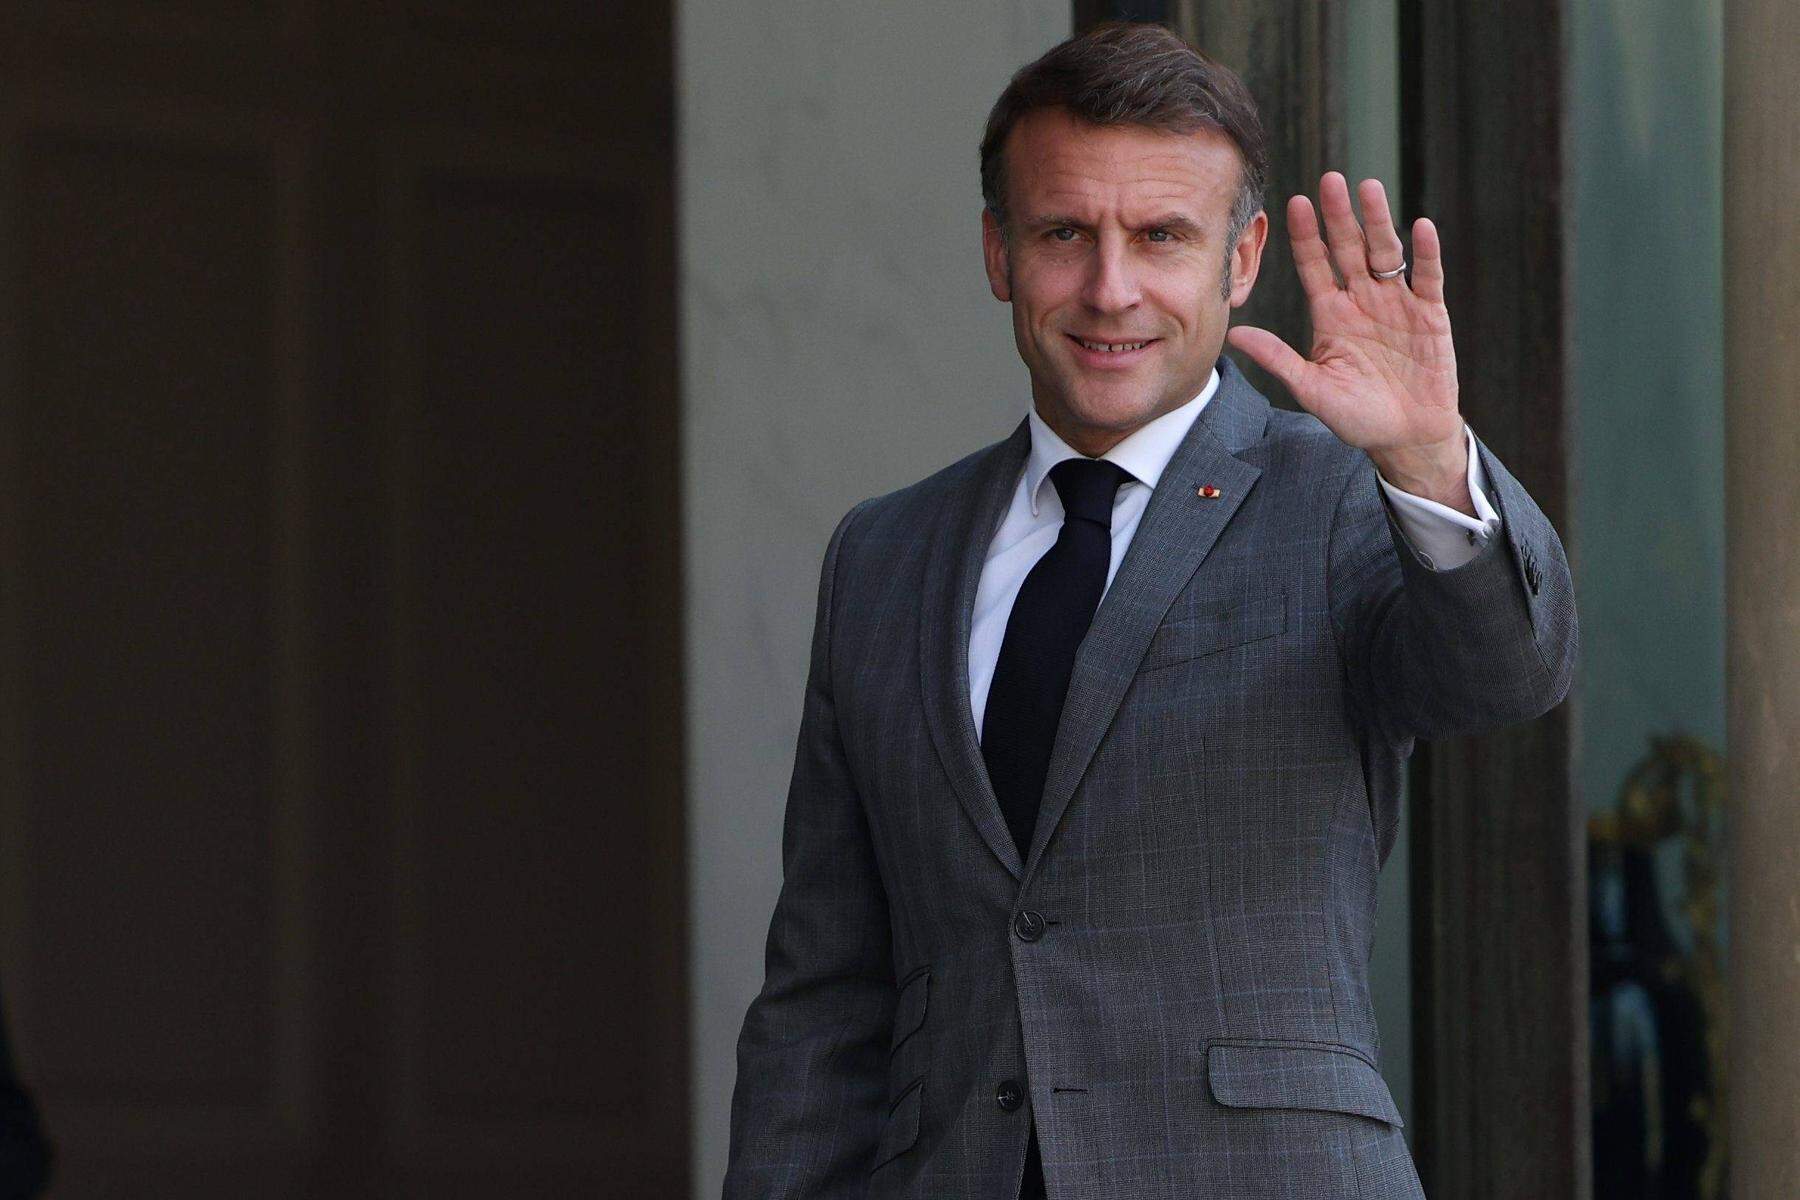 Wahltag als Zahltag für Macron?: Warum sich Europas Blicke nun auf Frankreich richten